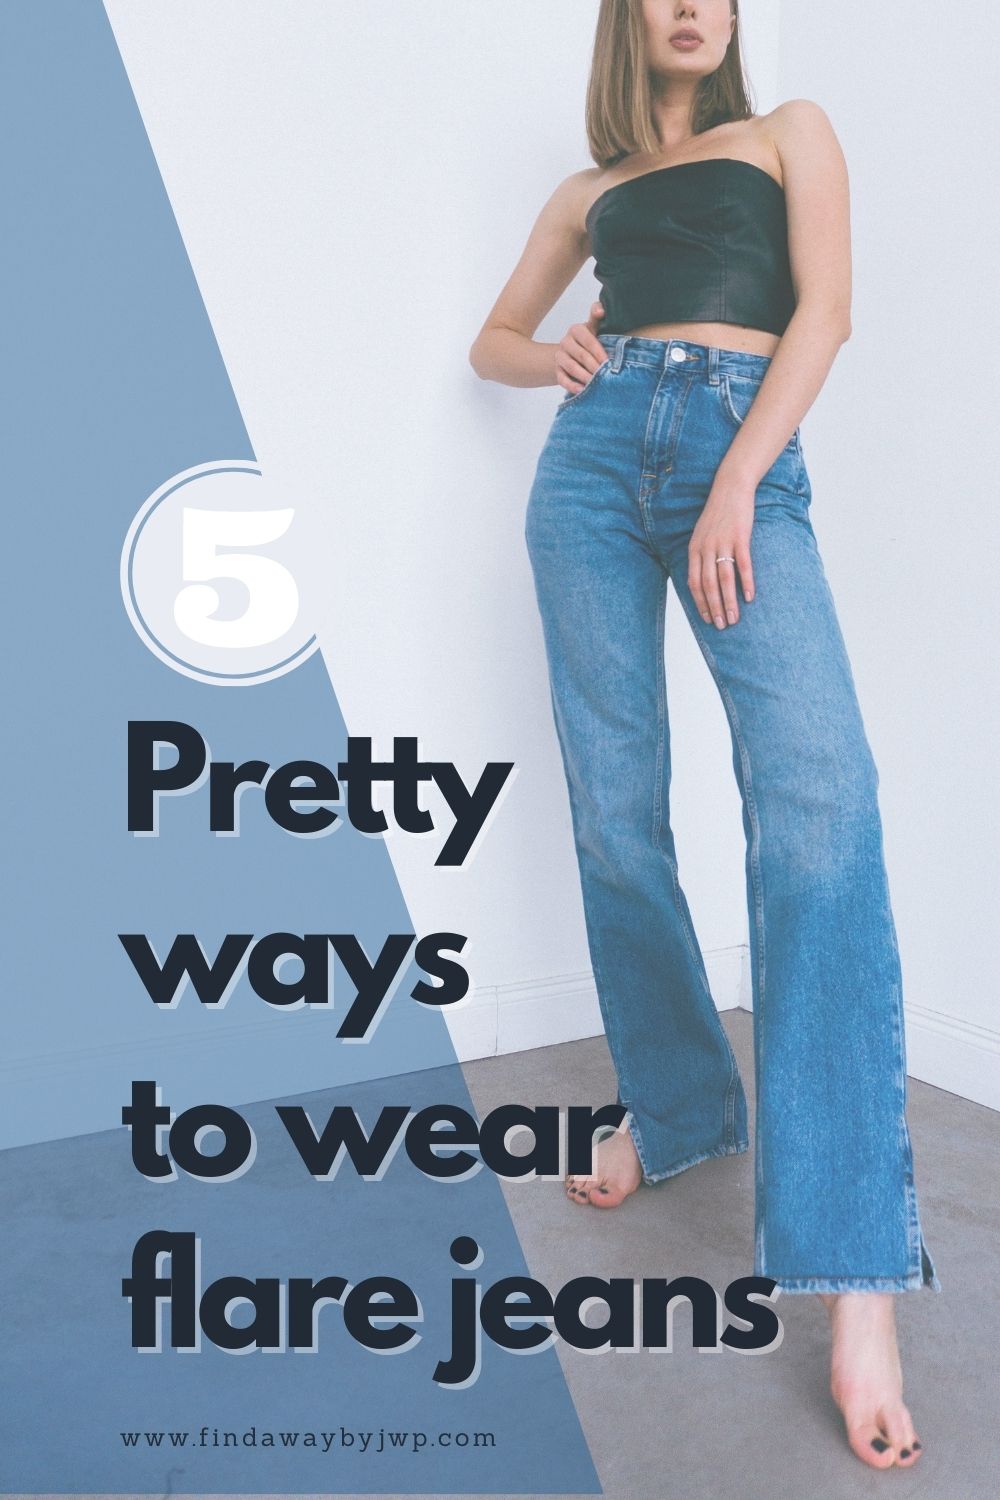 5 pretty ways to wear flare jeans - Find A Way by JWP